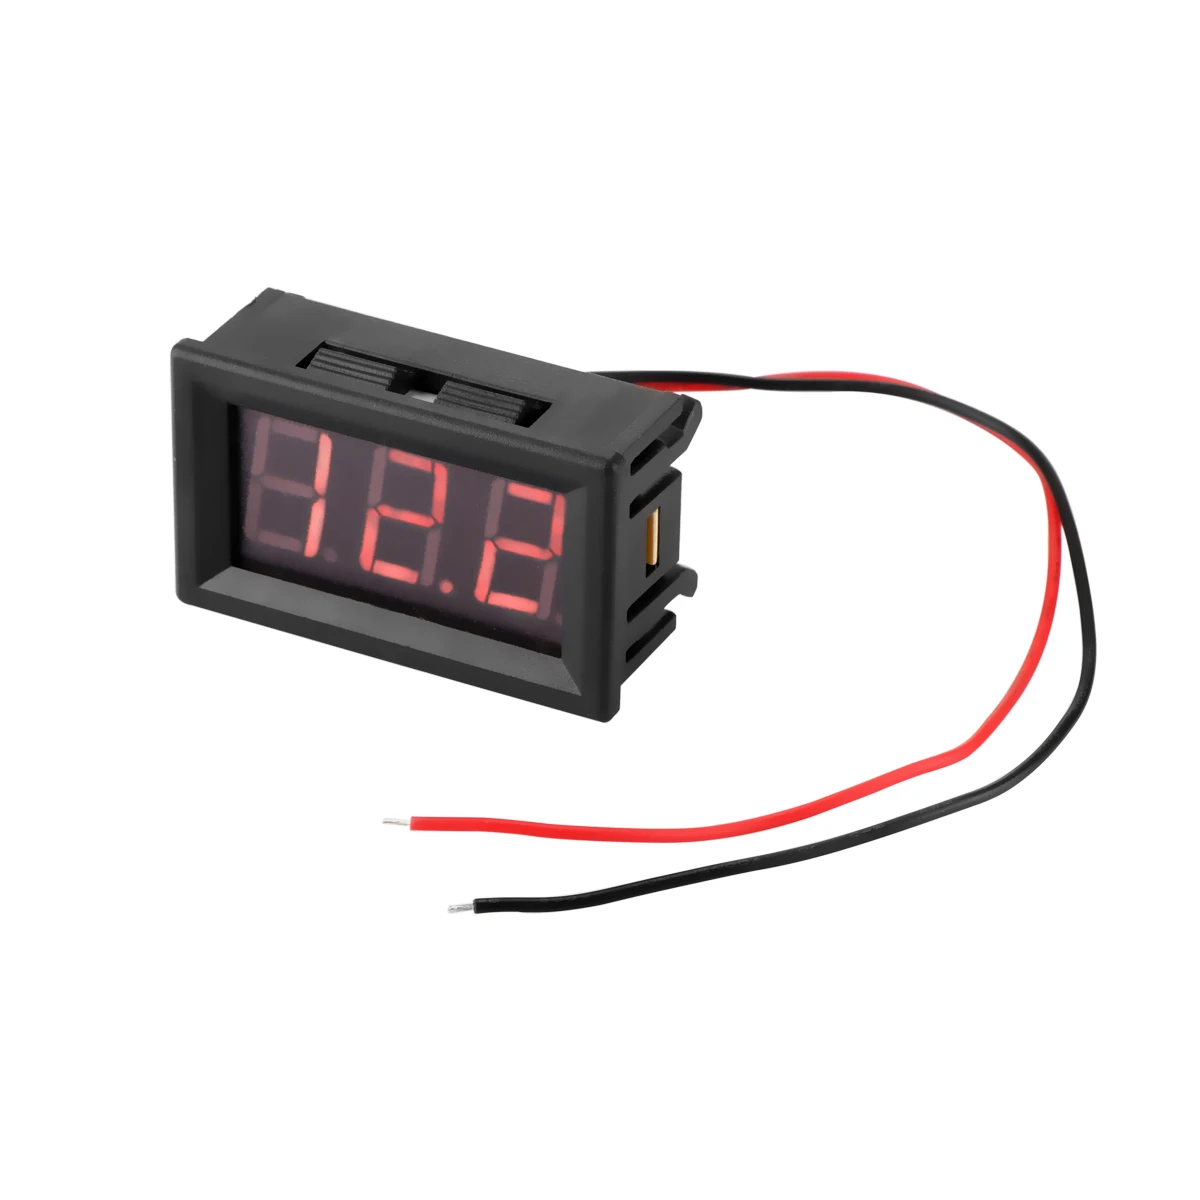 LED 3-Digital Display Voltmeter Car Motorcycle Voltage Gauge Panel Meter 4.5-30V 